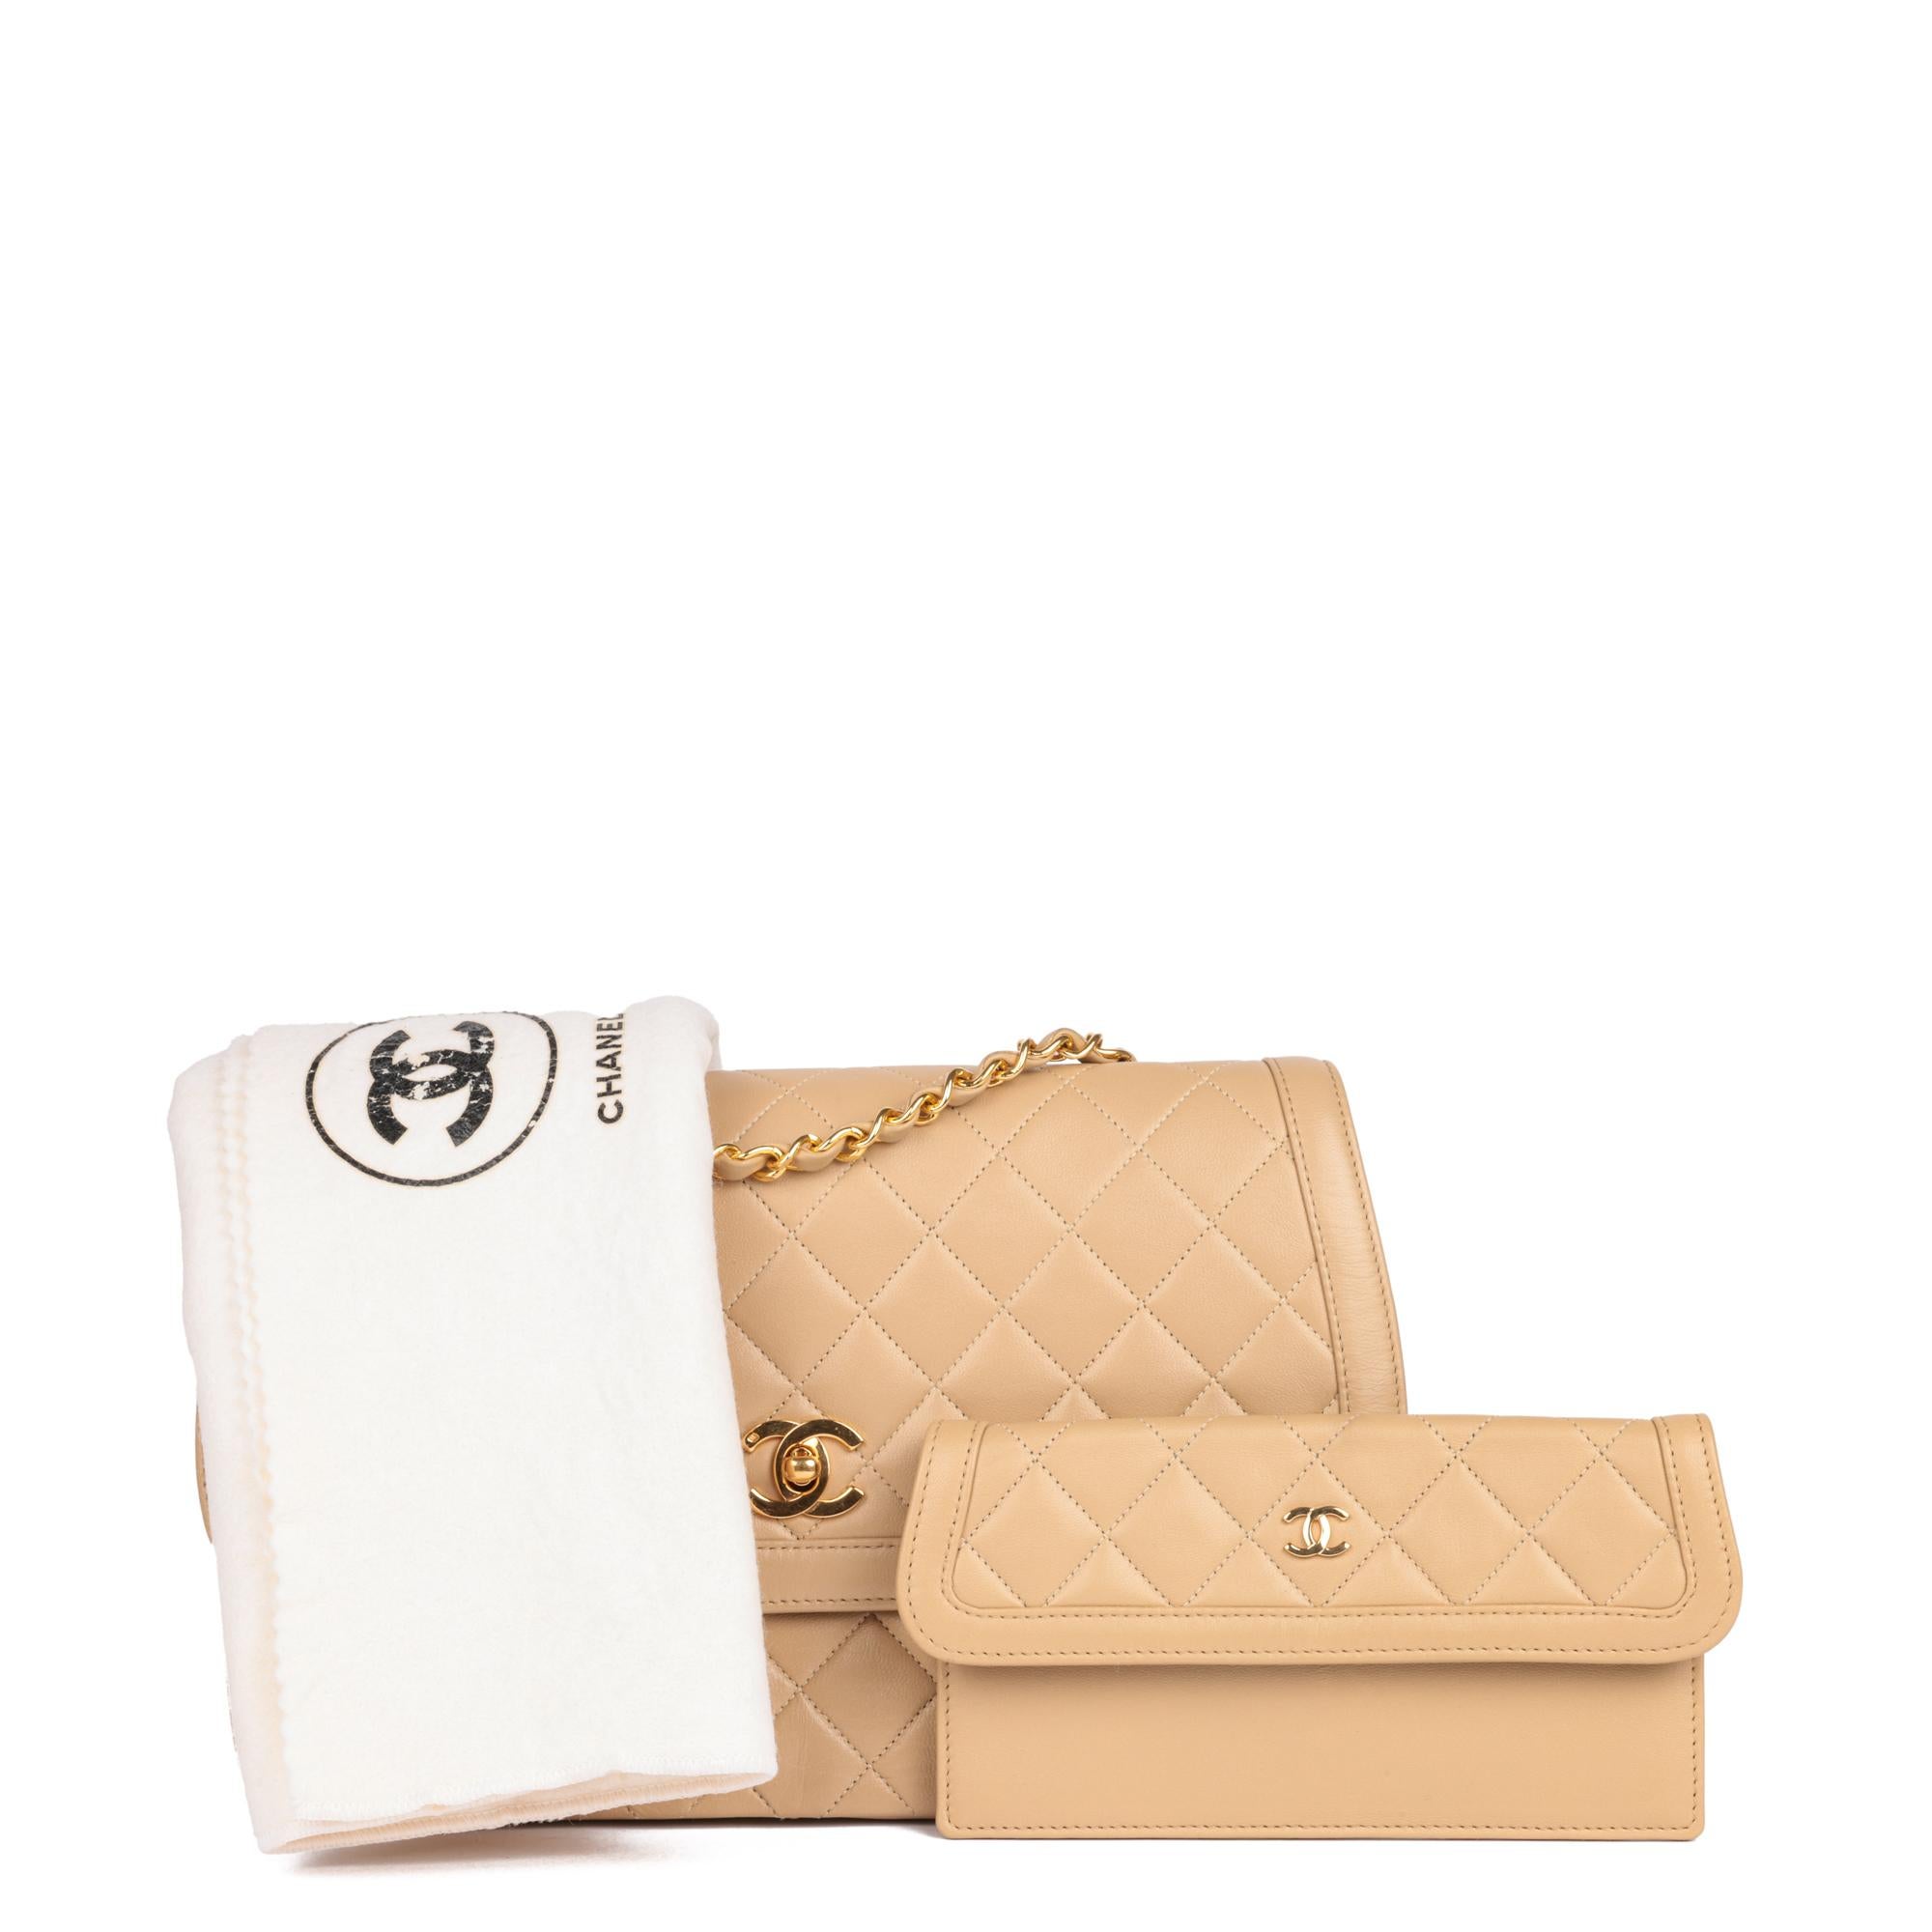 Chanel - Sac à rabat simple classique, taille moyenne, en cuir d'agneau matelassé beige, avec portefeuille en vente 7